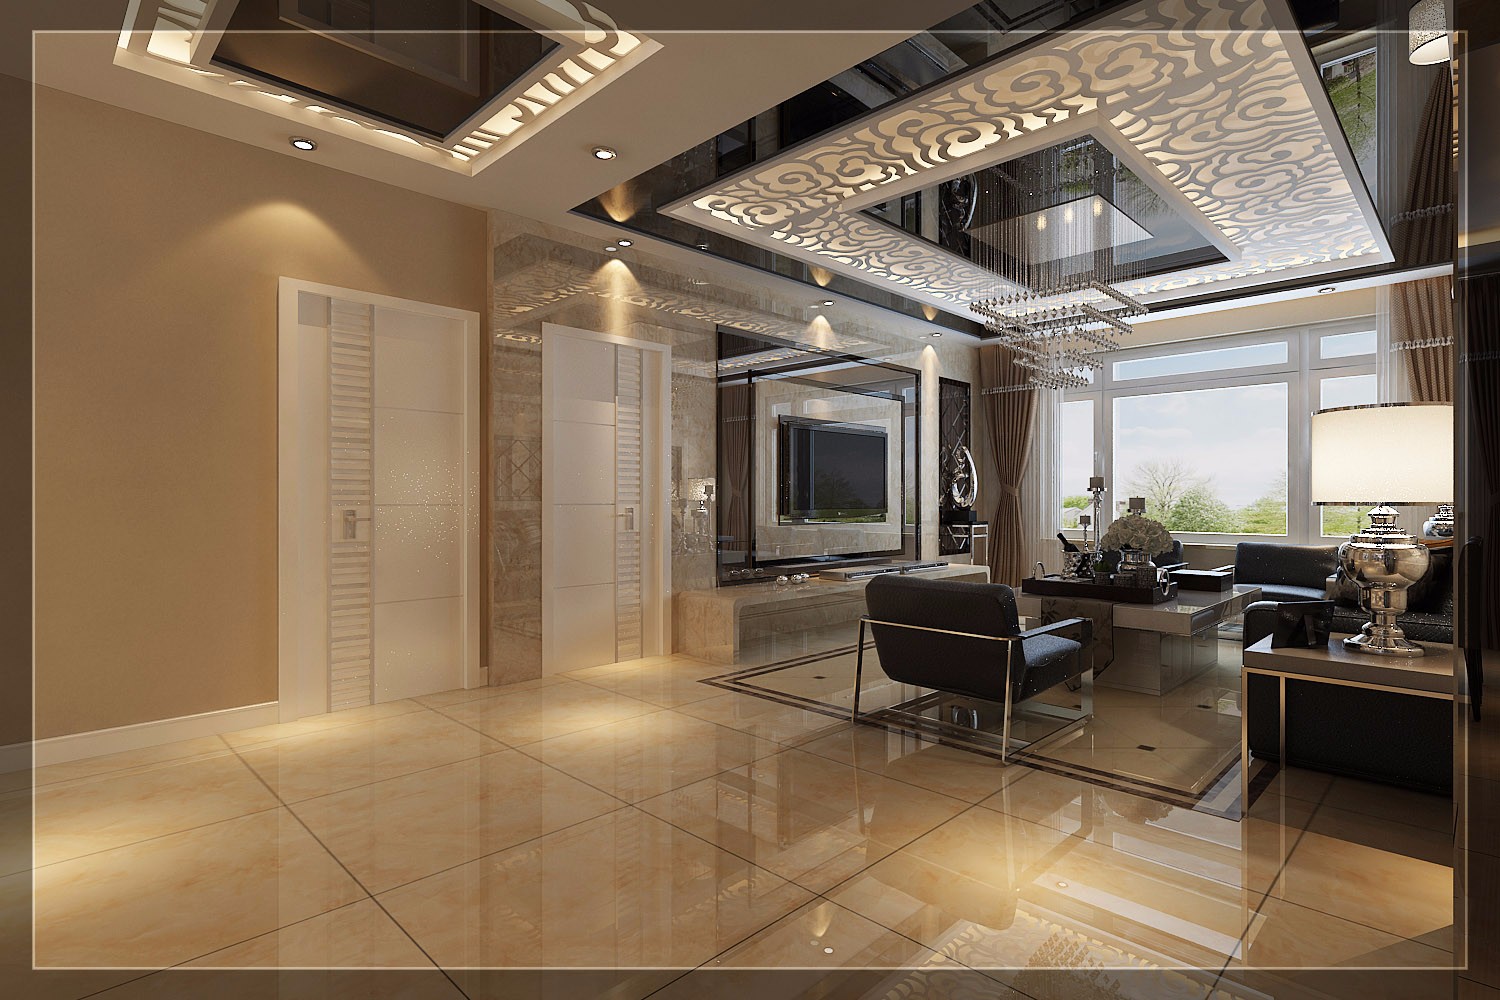 大户型,140平米以上装修,15-20万装修,客厅,现代简约风格,瓷砖,电视背景墙